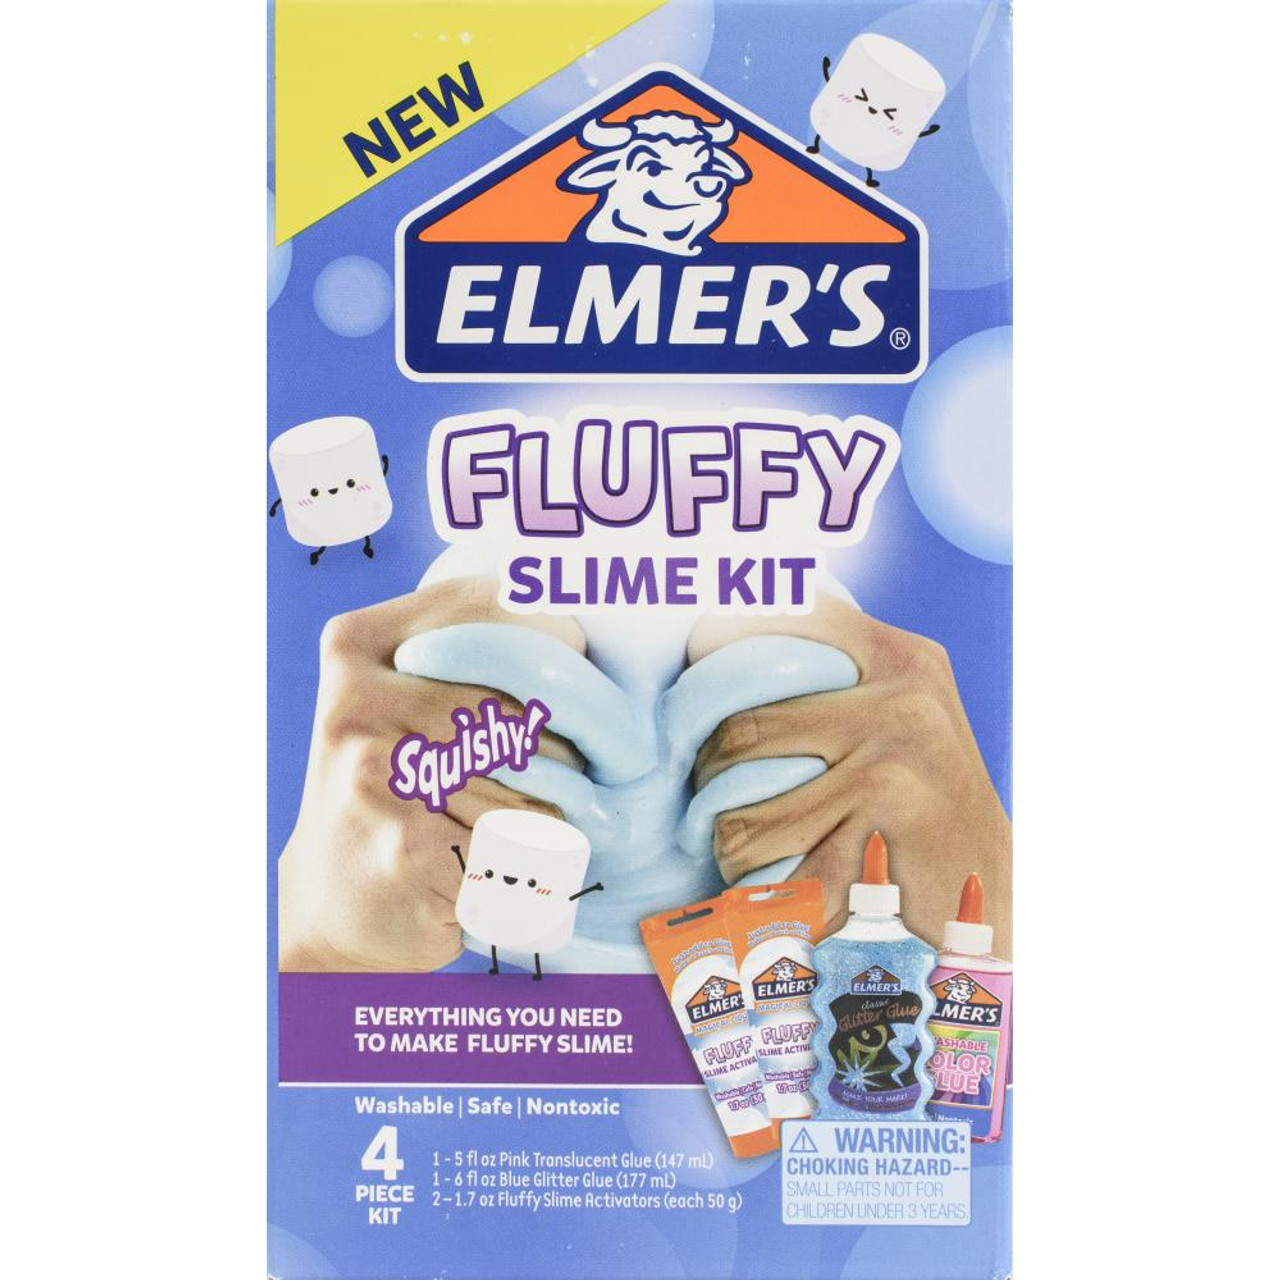 Elmer's Slime Kit, Fairy Dust